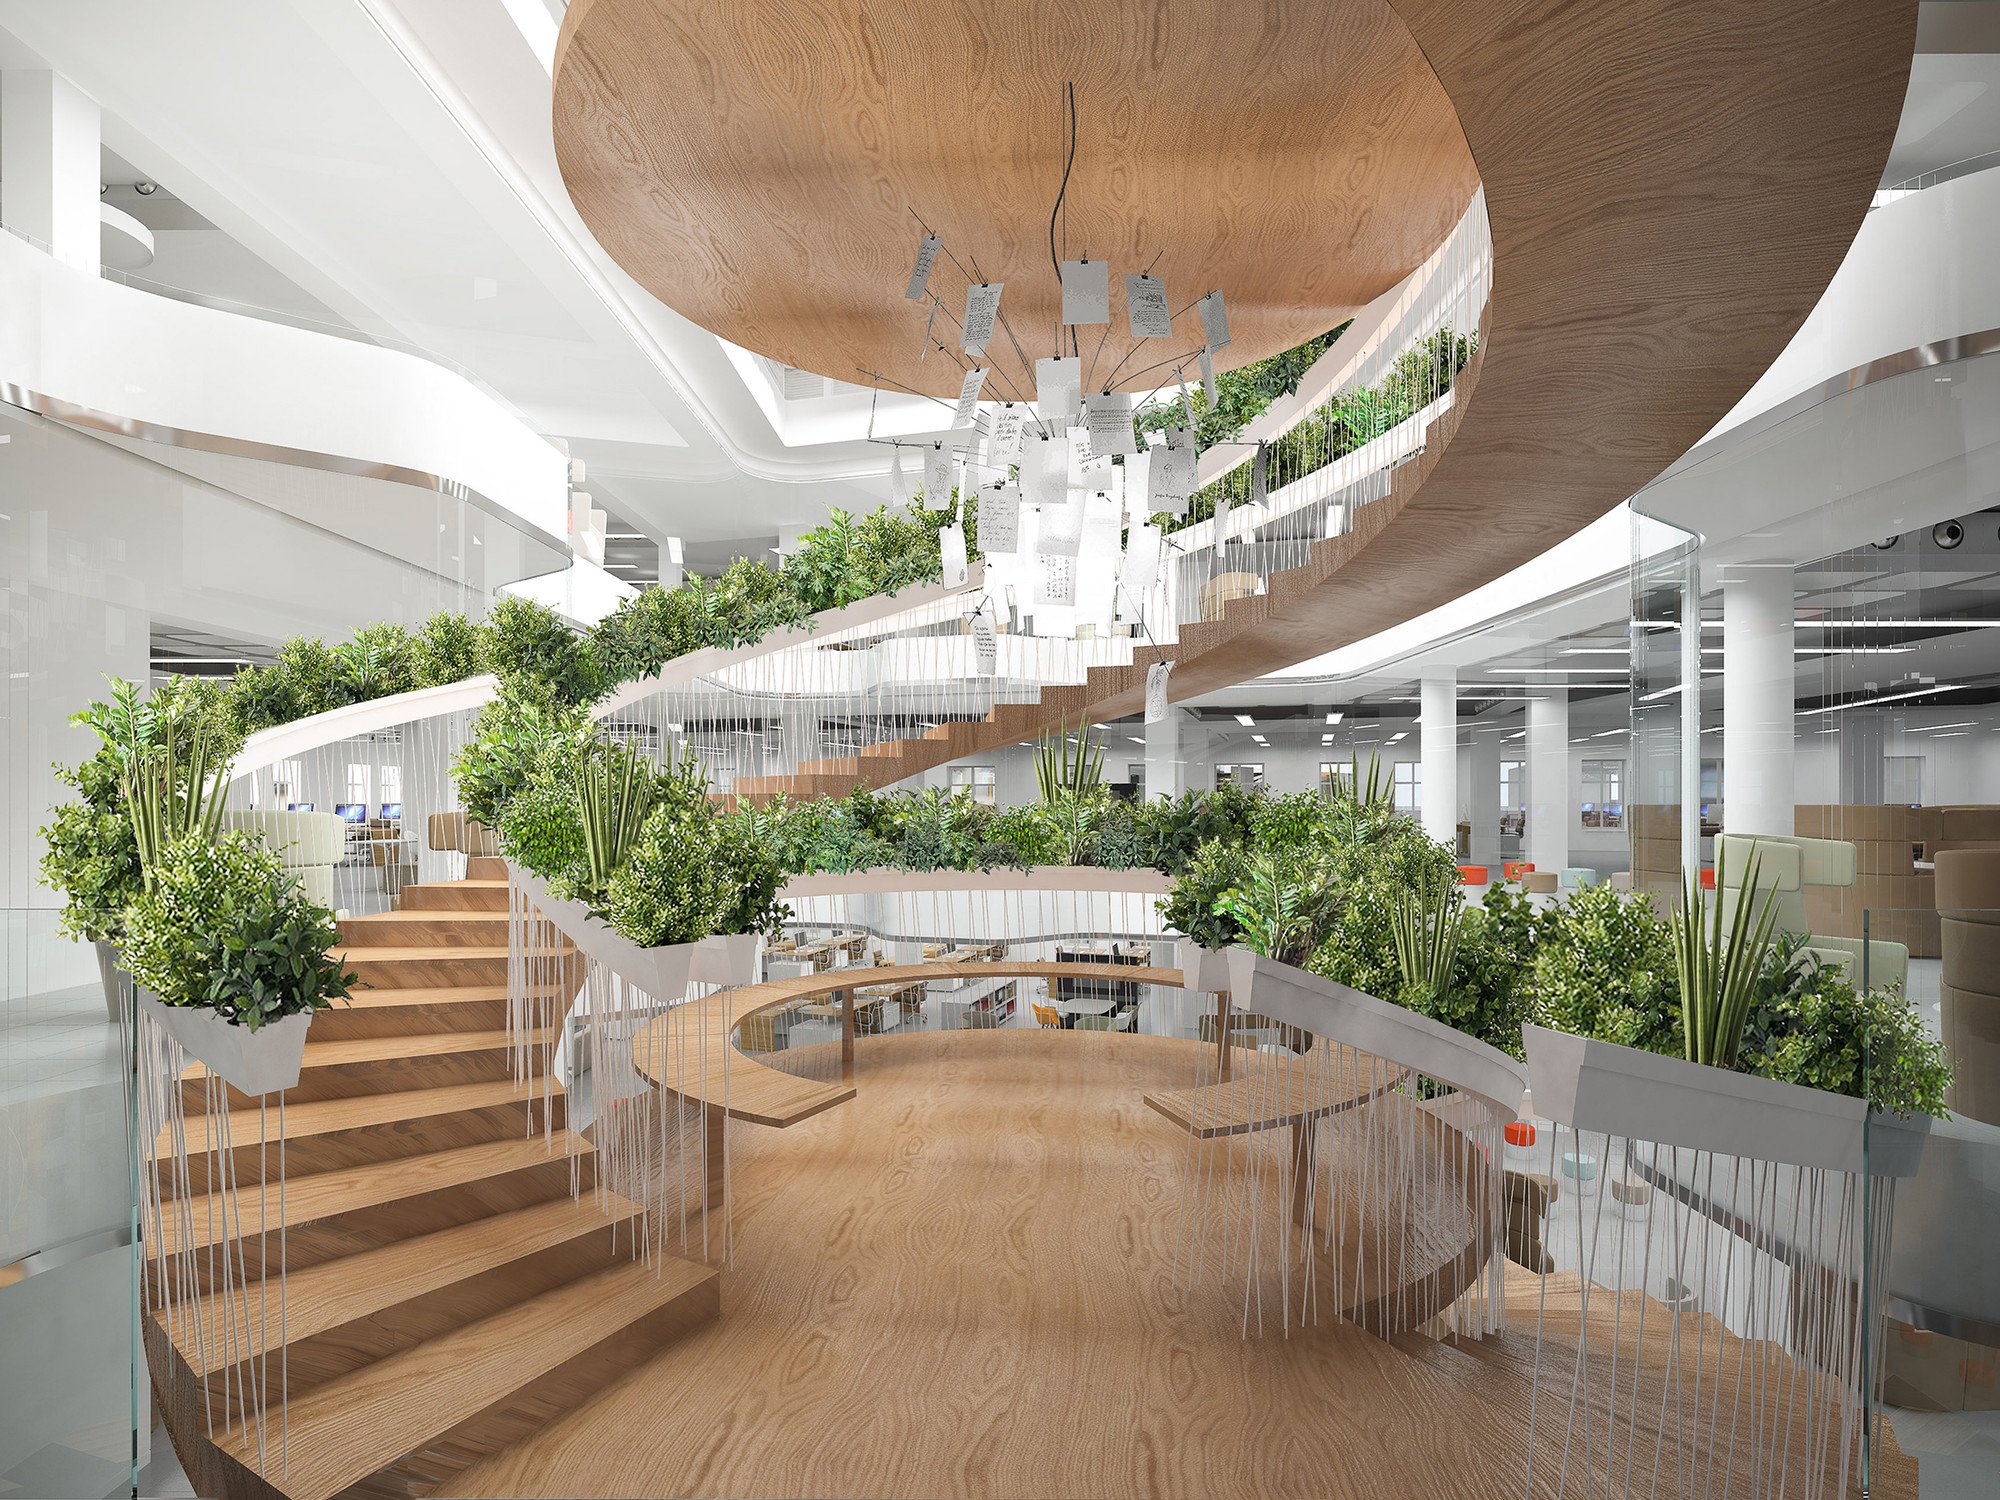 Рекреационные помещения. Лестницы Atrium Атриум. Парк Роял Сингапур архитектура. Greenery Озеленение интерьера. Экостиль в архитектуре общественных зданий.